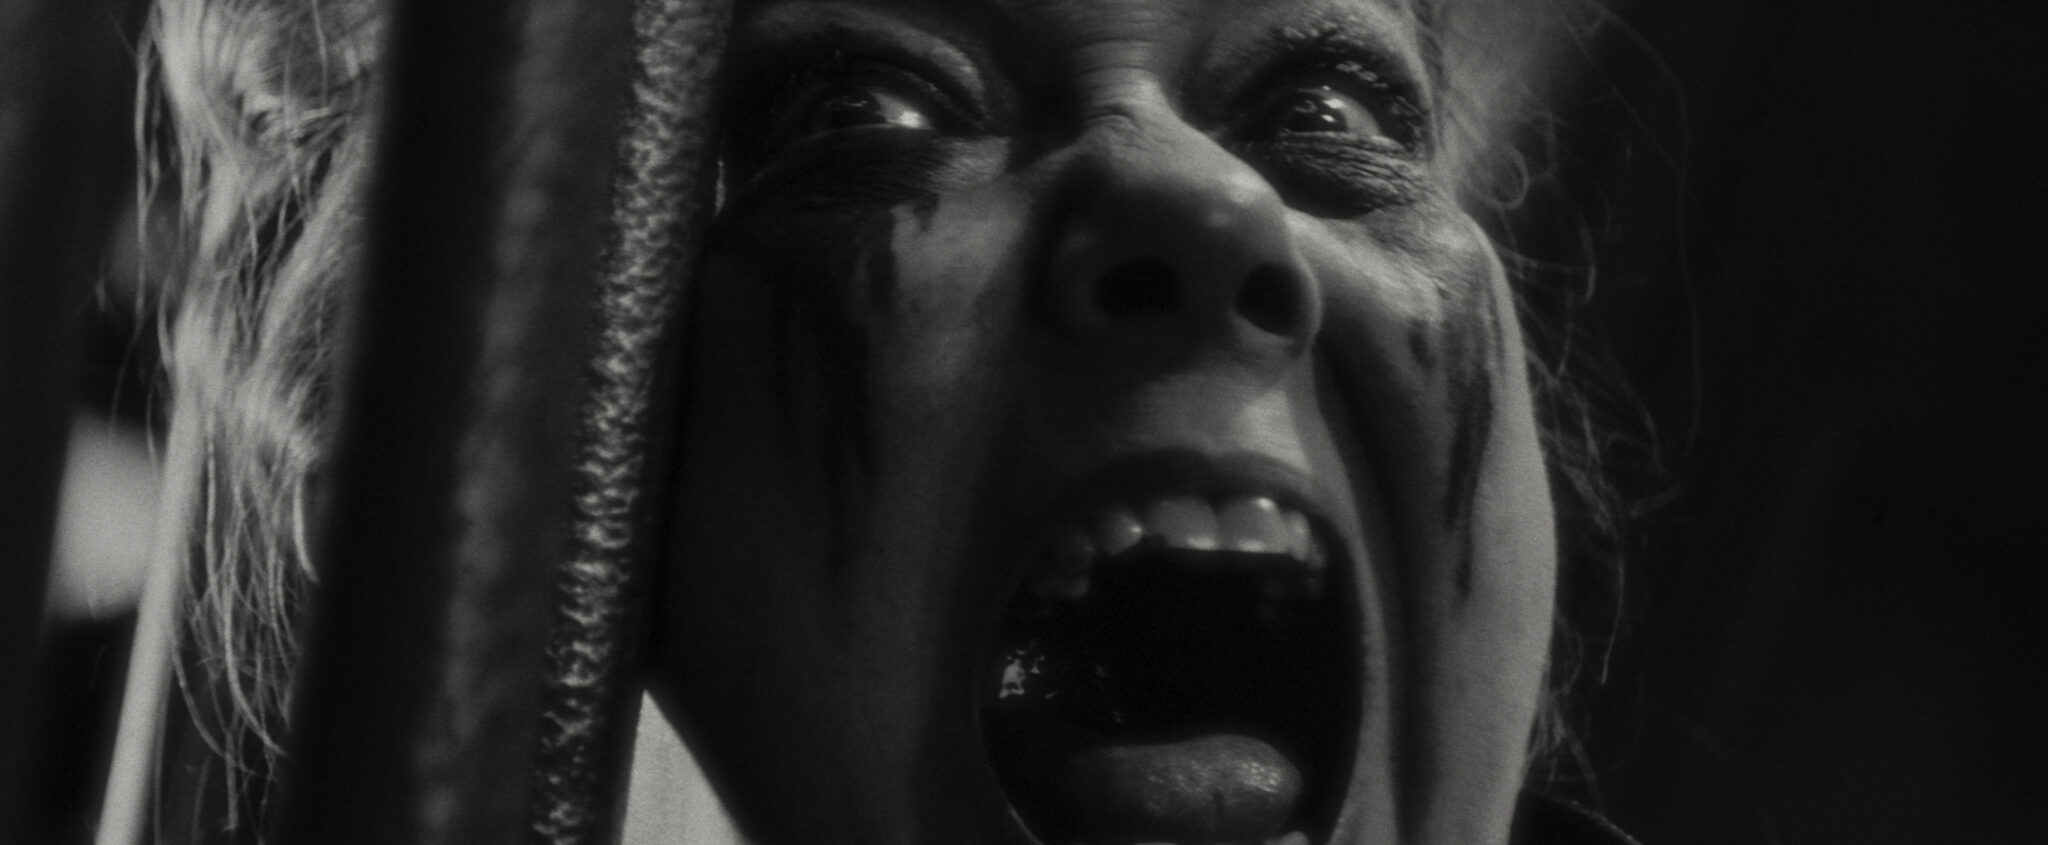 Harriet Sansom Harris als Verussa - Close Up in schwarzweiß